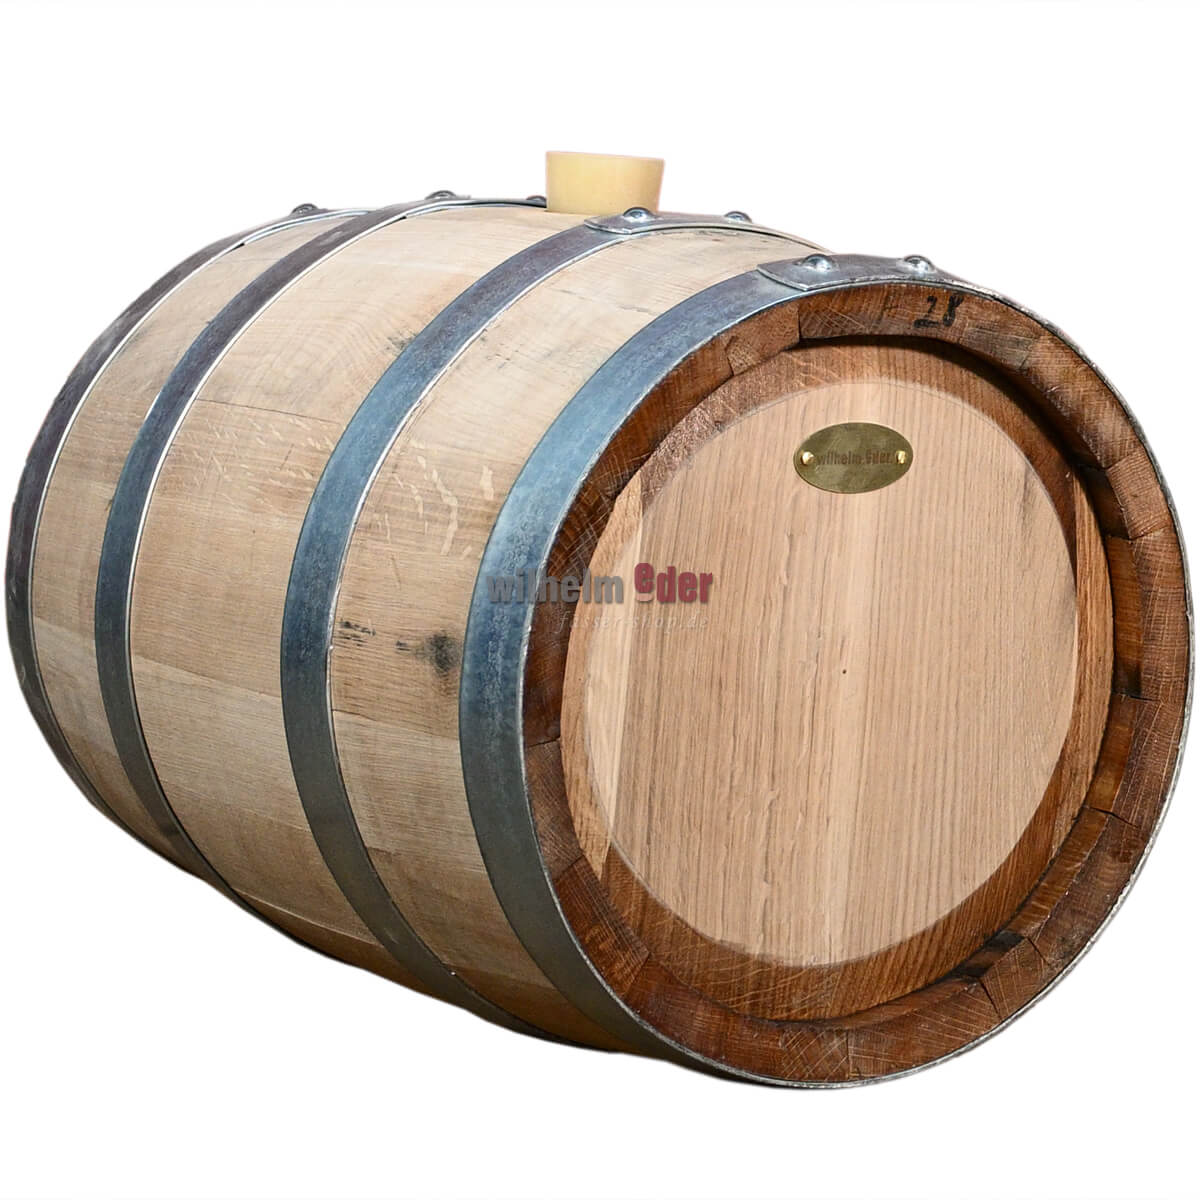 Herb liqueur barrel - rebuilt